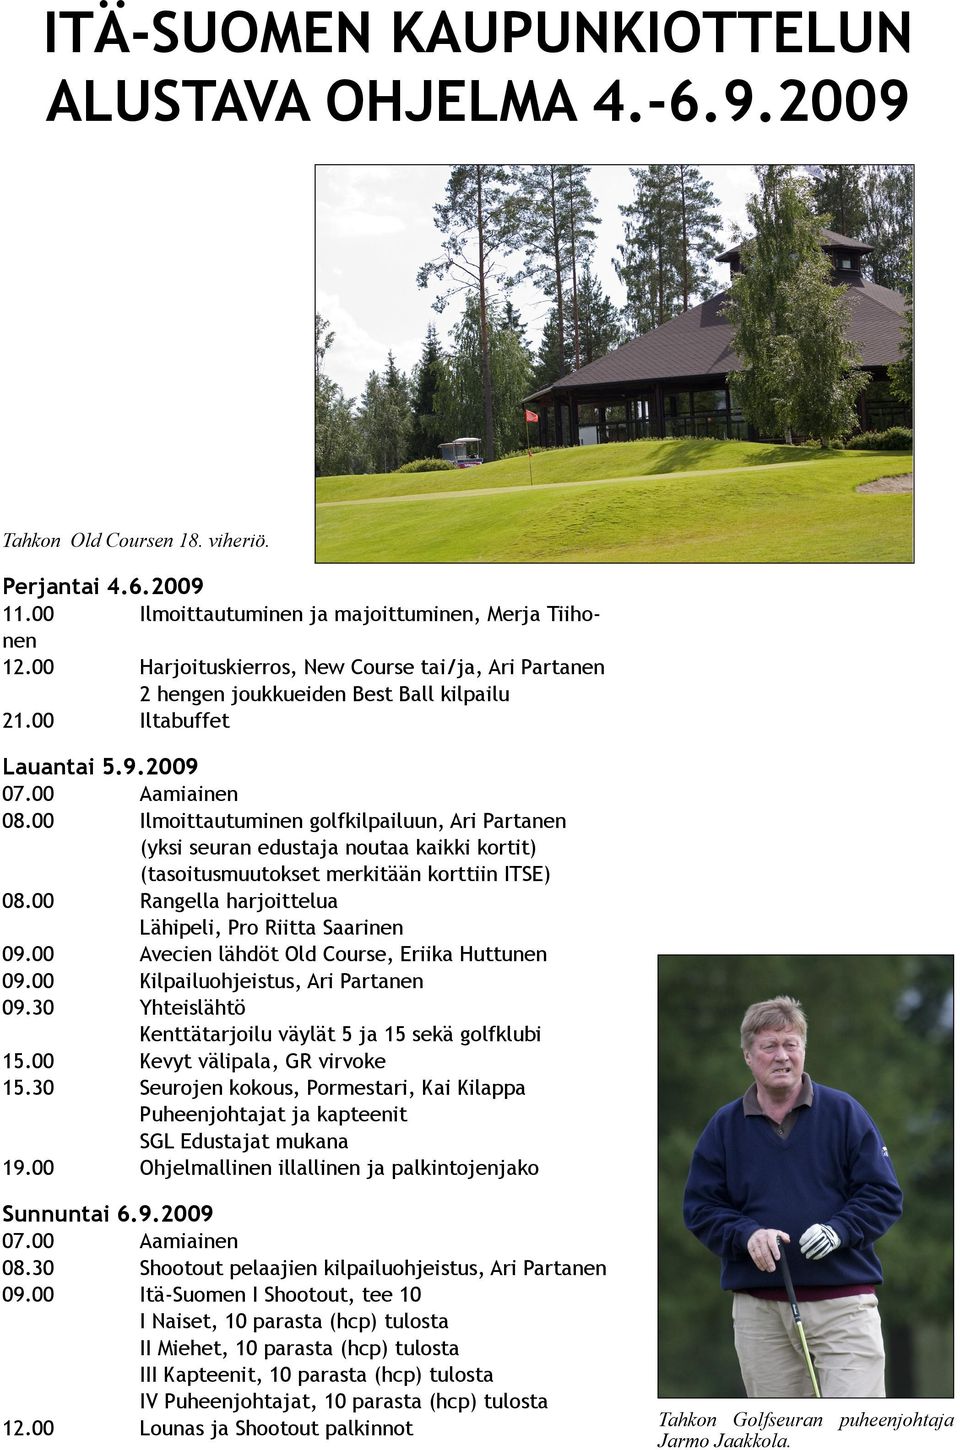 00 Ilmoittautuminen golfkilpailuun, Ari Partanen (yksi seuran edustaja noutaa kaikki kortit) (tasoitusmuutokset merkitään korttiin ITSE) 08.00 Rangella harjoittelua Lähipeli, Pro Riitta Saarinen 09.